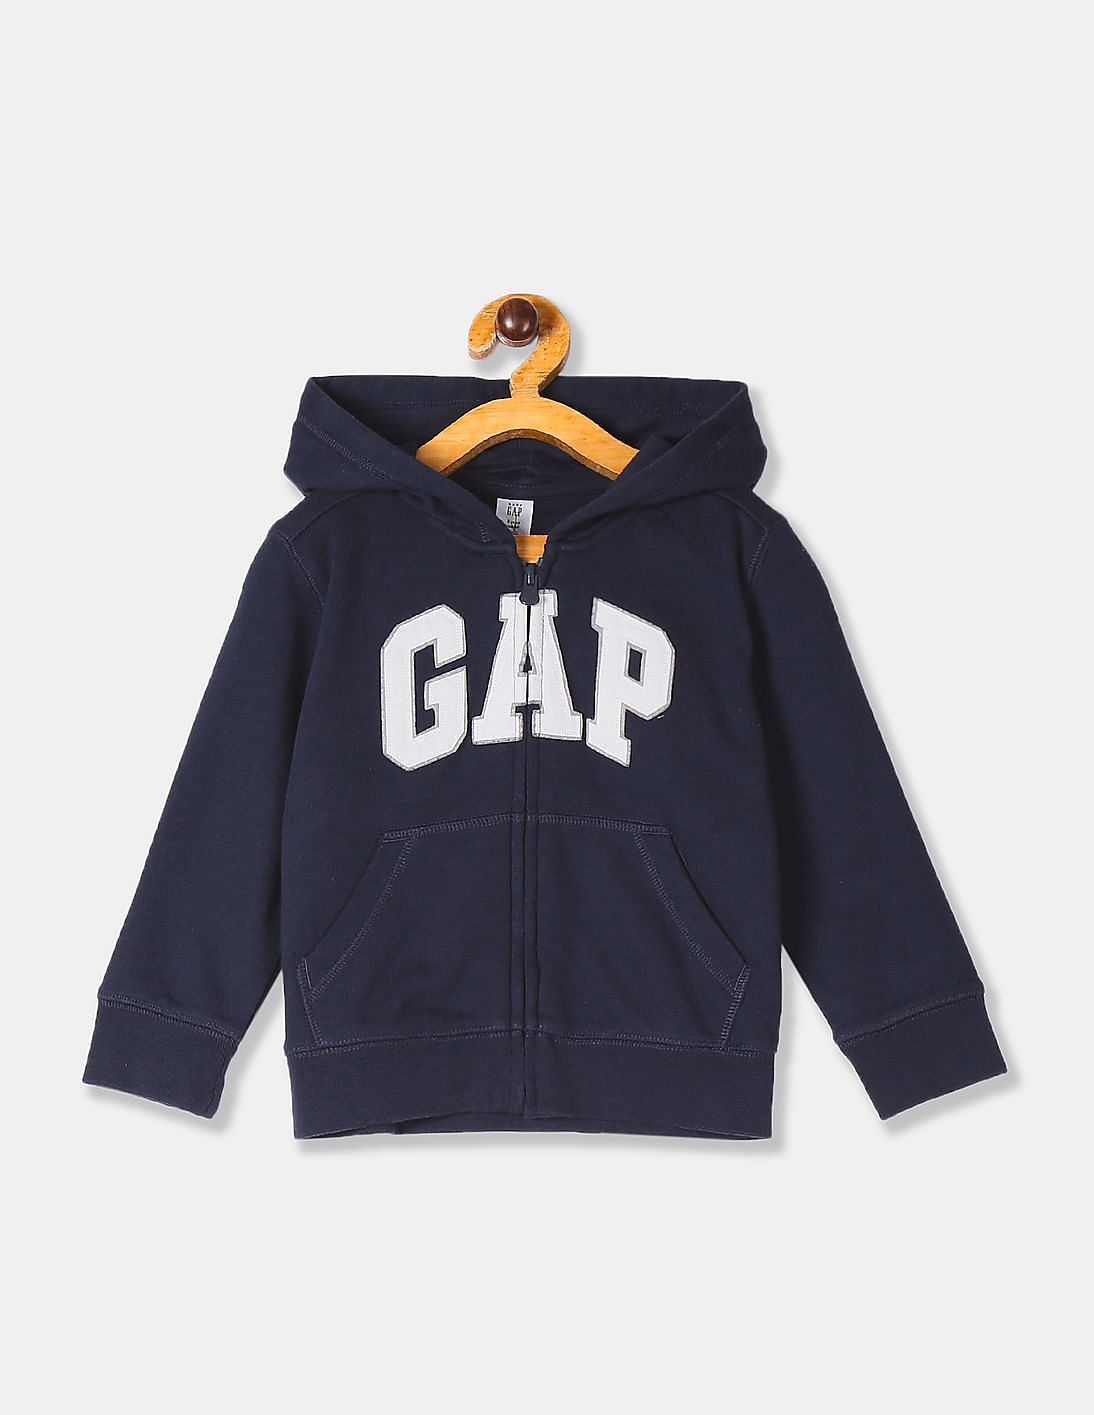 gap zip up